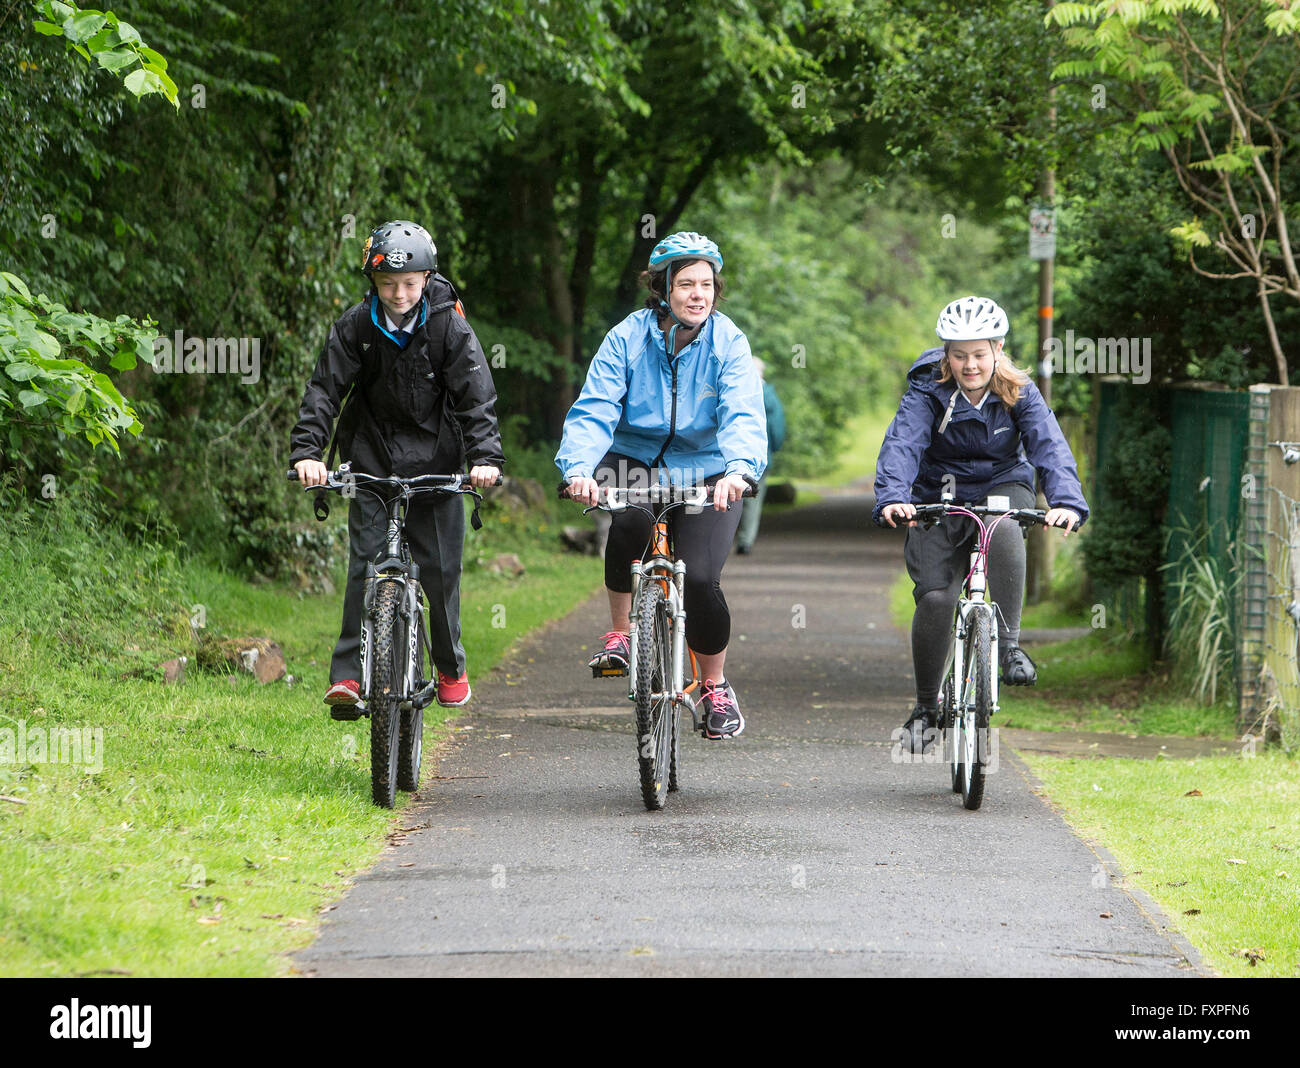 Les enfants en toute sécurité à vélo à l'école avec la supervision d'adultes sur les voies Banque D'Images